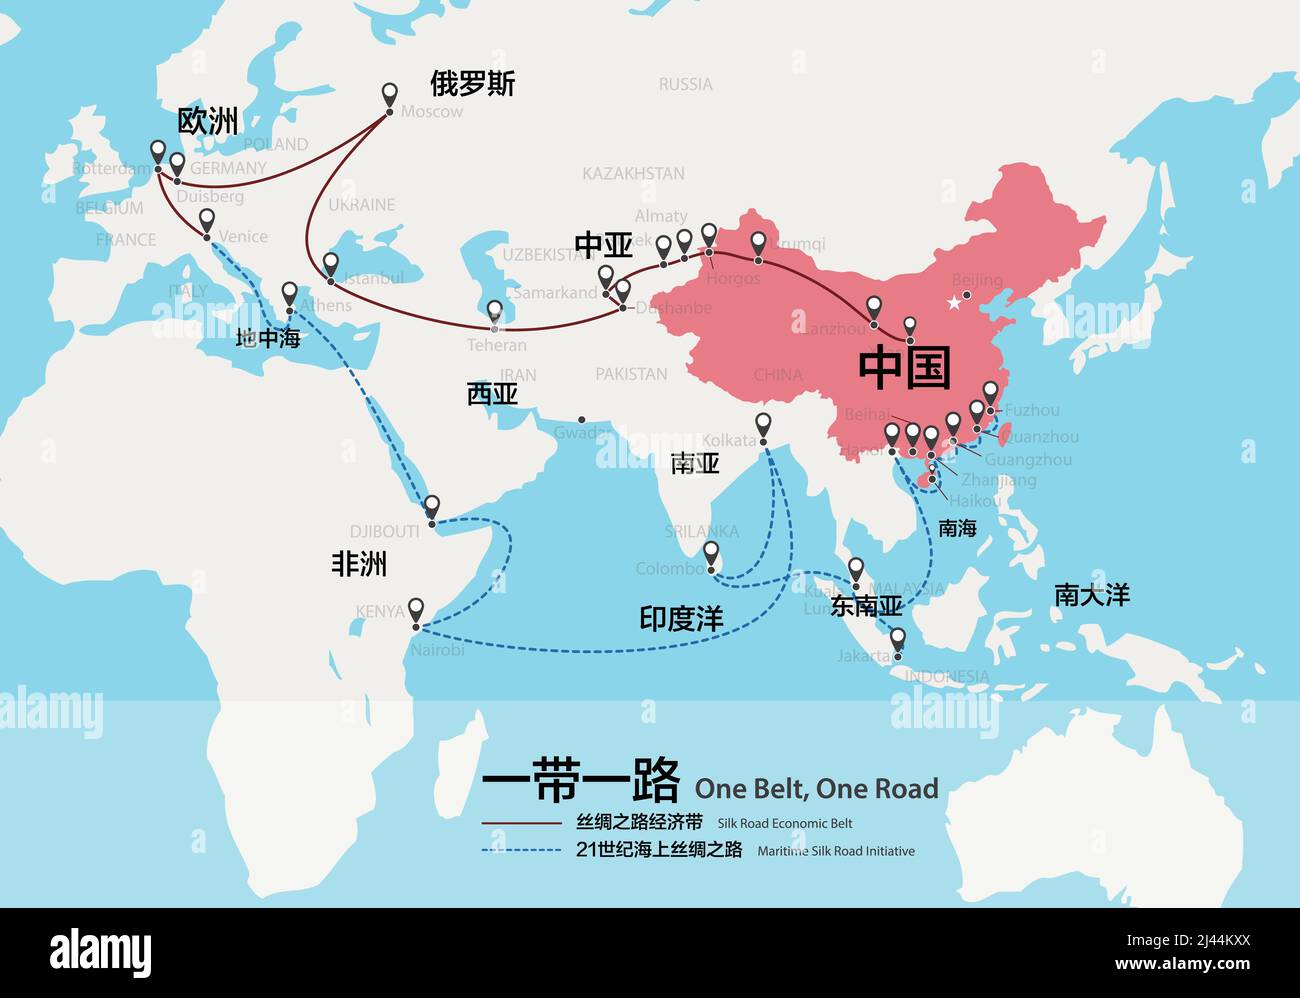 One Belt, One Road, investissement stratégique chinois dans la carte du 21st siècle. Les mots chinois sur la carte sont le nom comme la chine, une ceinture une route, l'UE Illustration de Vecteur